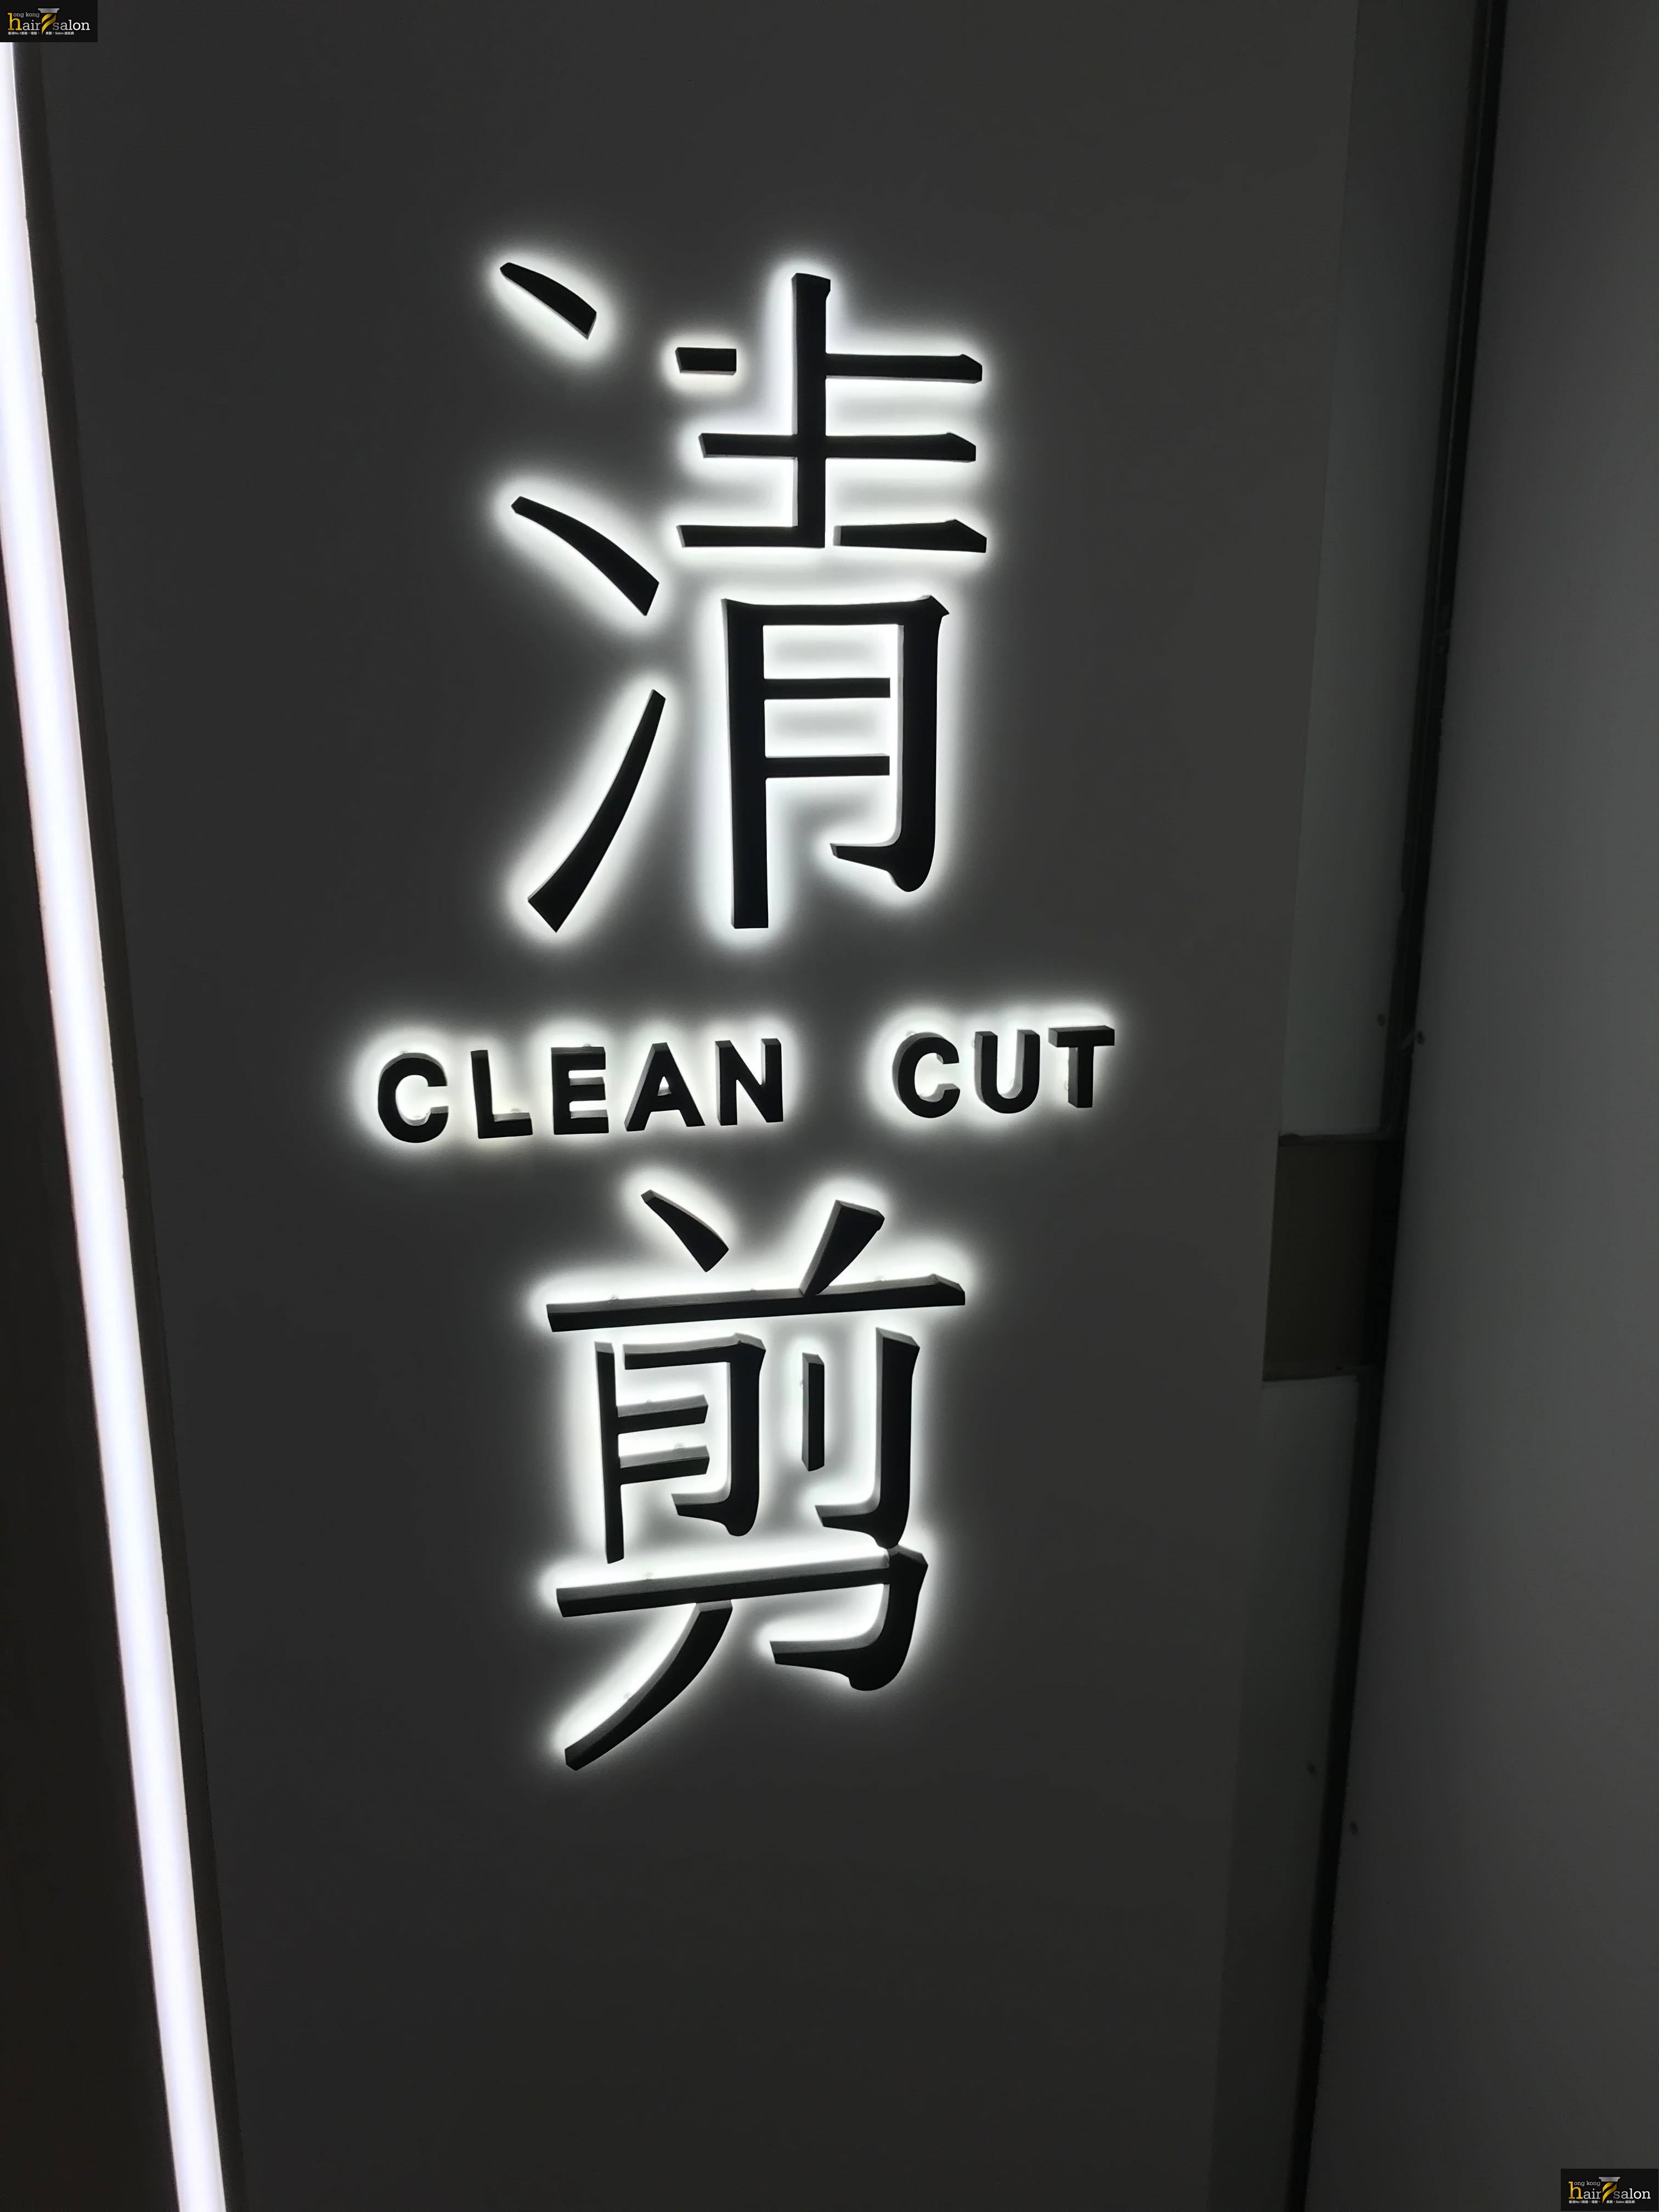 髮型屋 Salon: 清剪 CLEAN CUT (小西灣藍灣廣場)